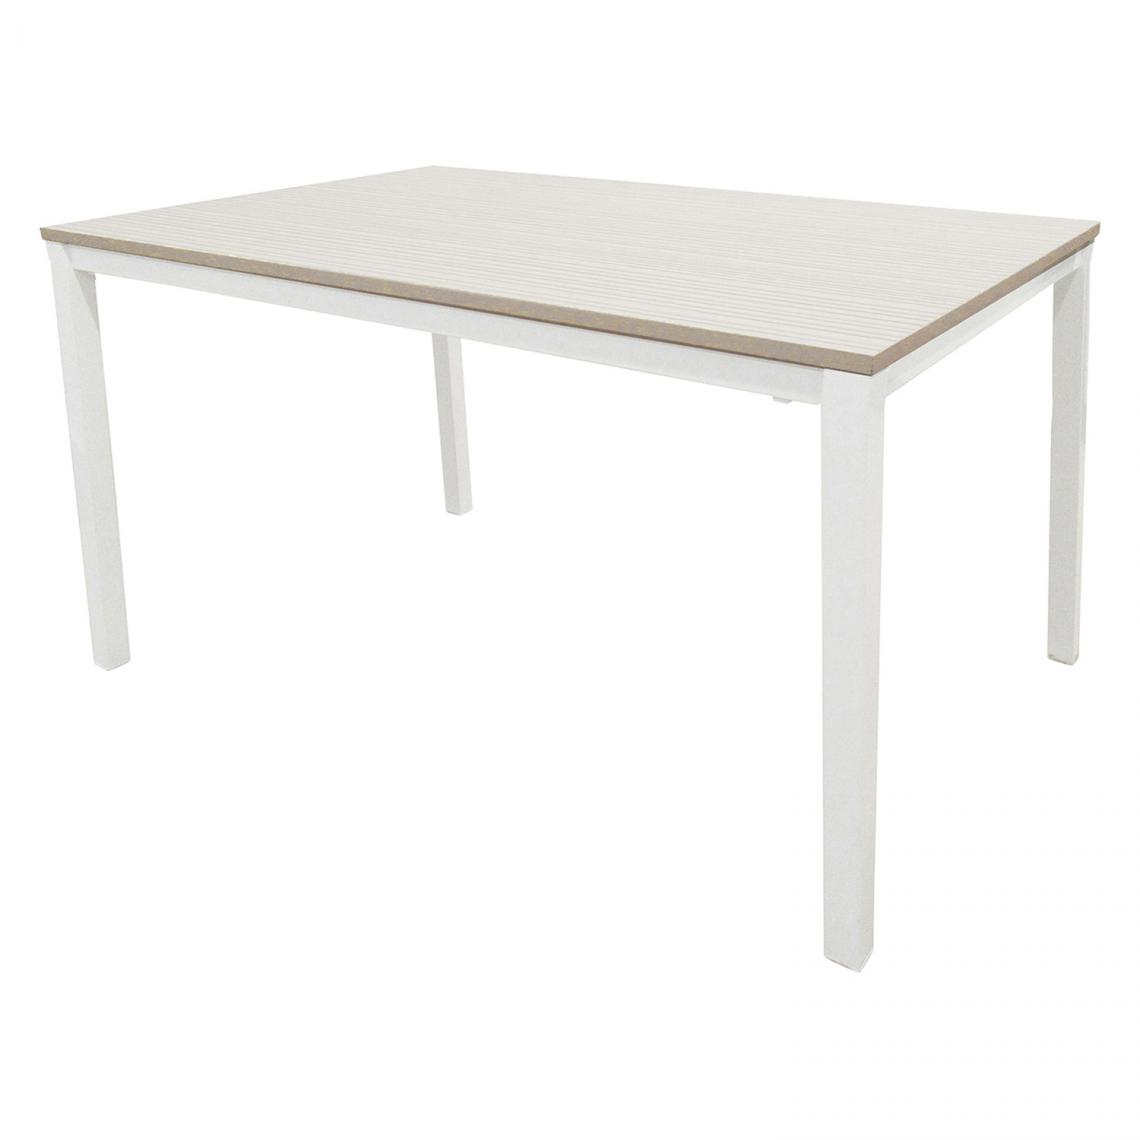 Alter - Table à rallonges en métal peint et plateau en stratifié, coloris blanc, 130 x 76 x 85 cm. - Tables à manger